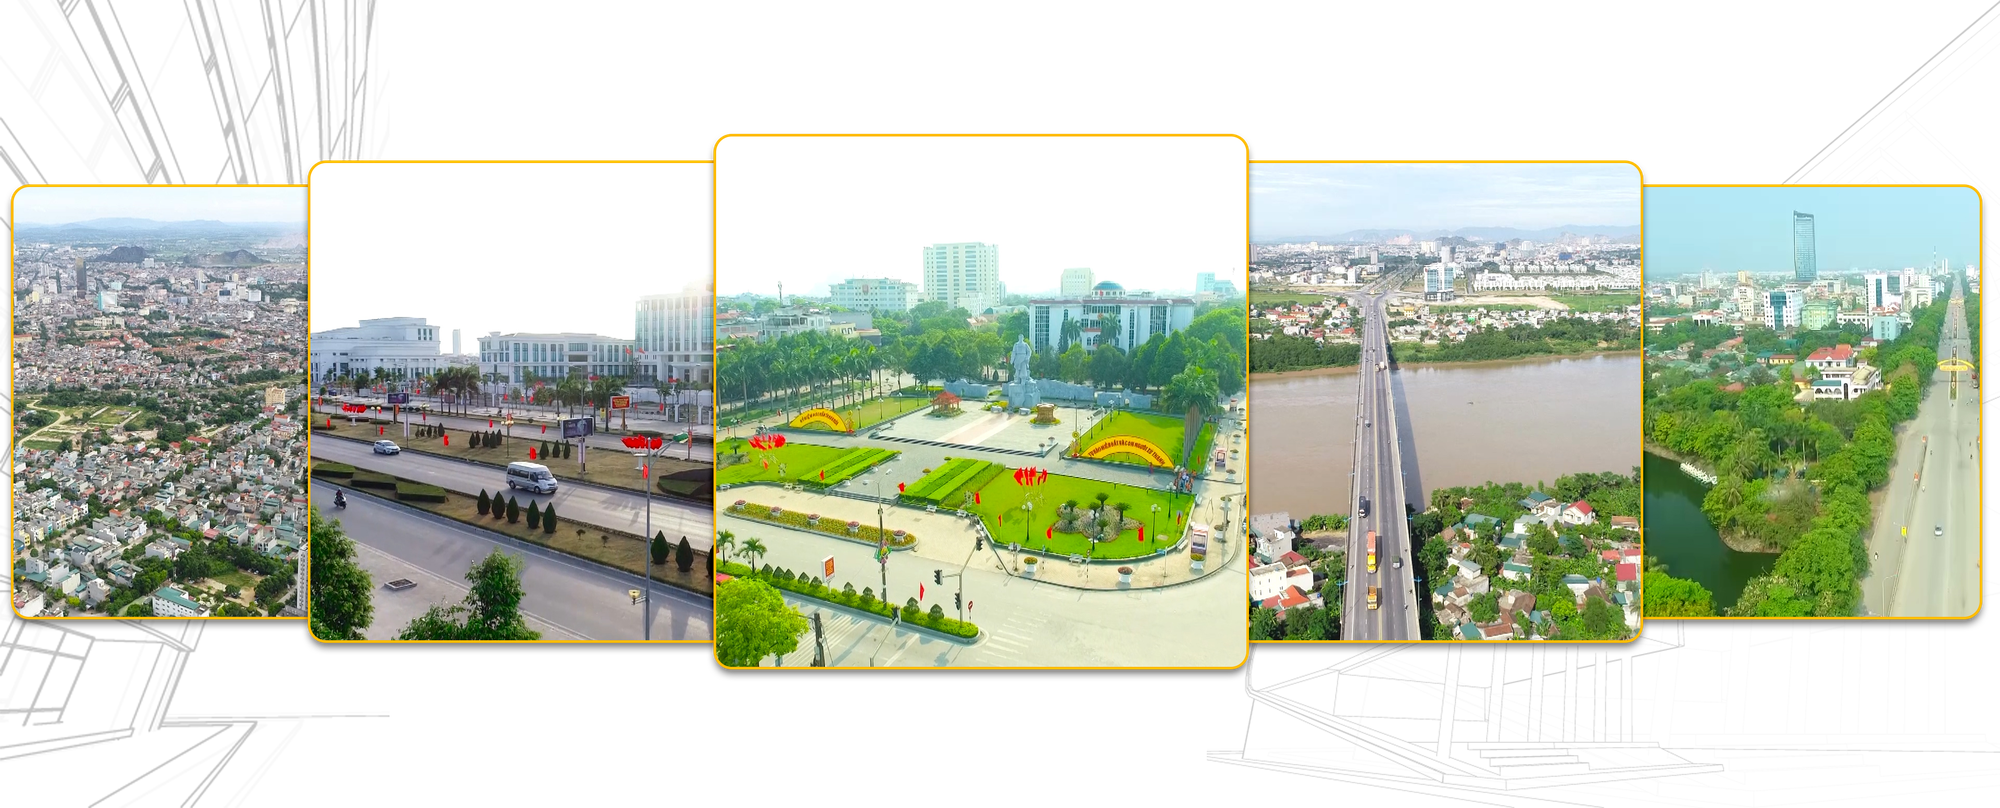 [E-Magazine] Quy hoạch chung đô thị Thanh Hóa đến năm 2040 - Cơ sở để xây dựng “Thành phố hội tụ - Kết nối phát triển” - Ảnh 3.